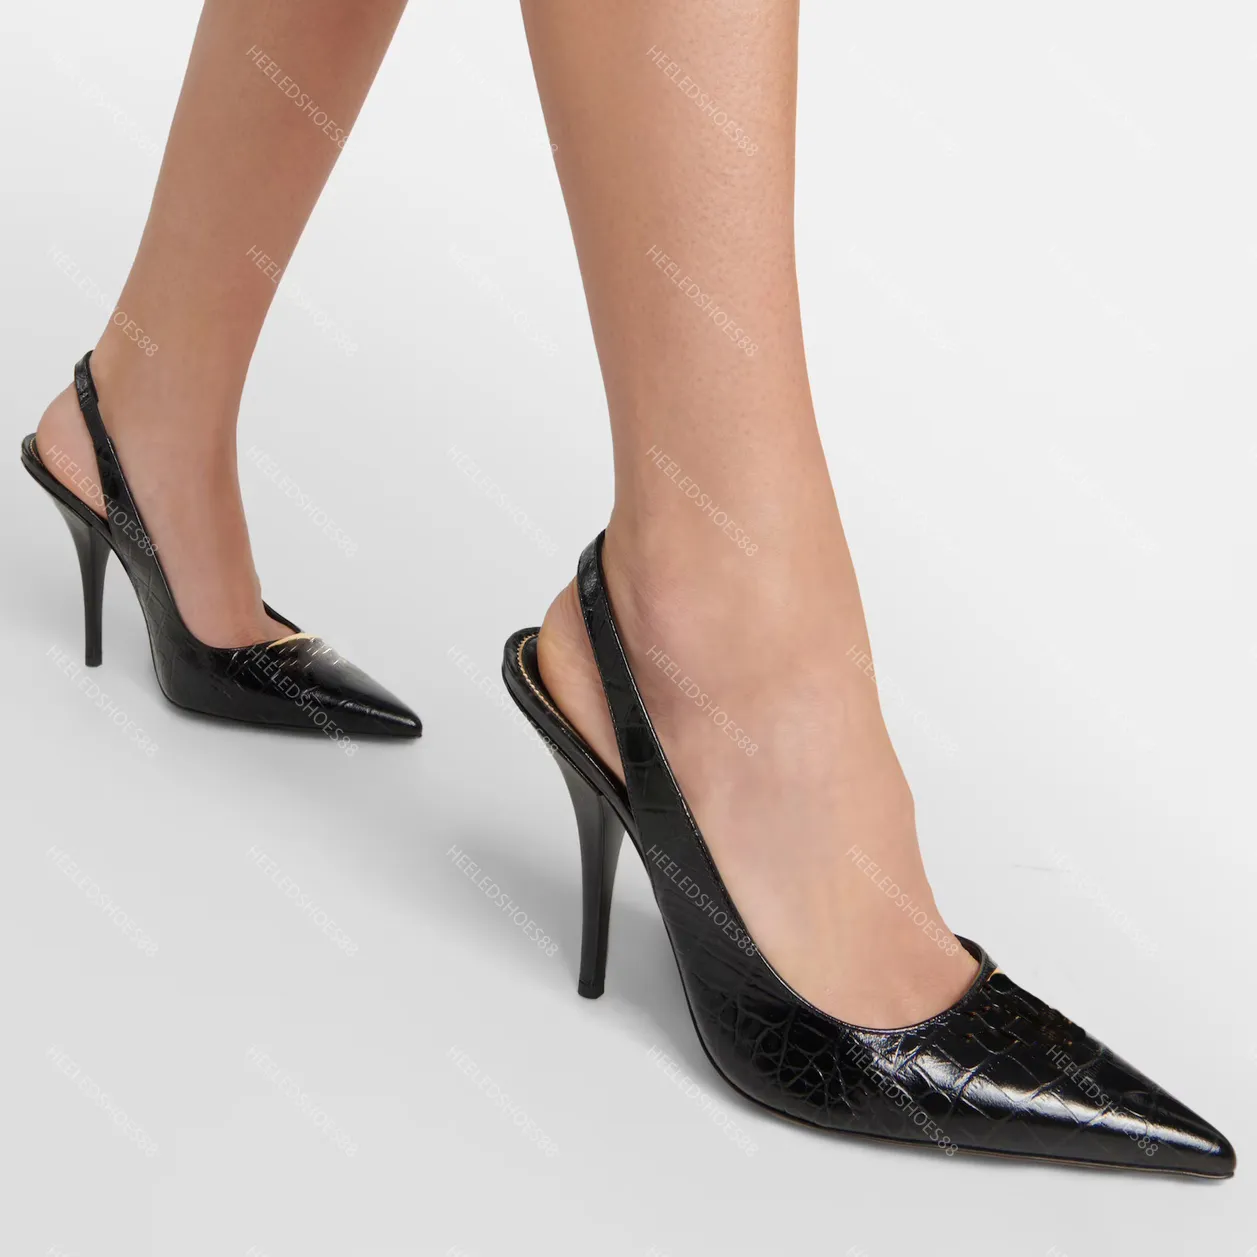 Chaussures habillées Designers Sandales Femmes Slingbacks Mode Strass Boucle Satin Crocodile à motifs peau de vache 10cm sandale à talons hauts chaussure femme 35-42